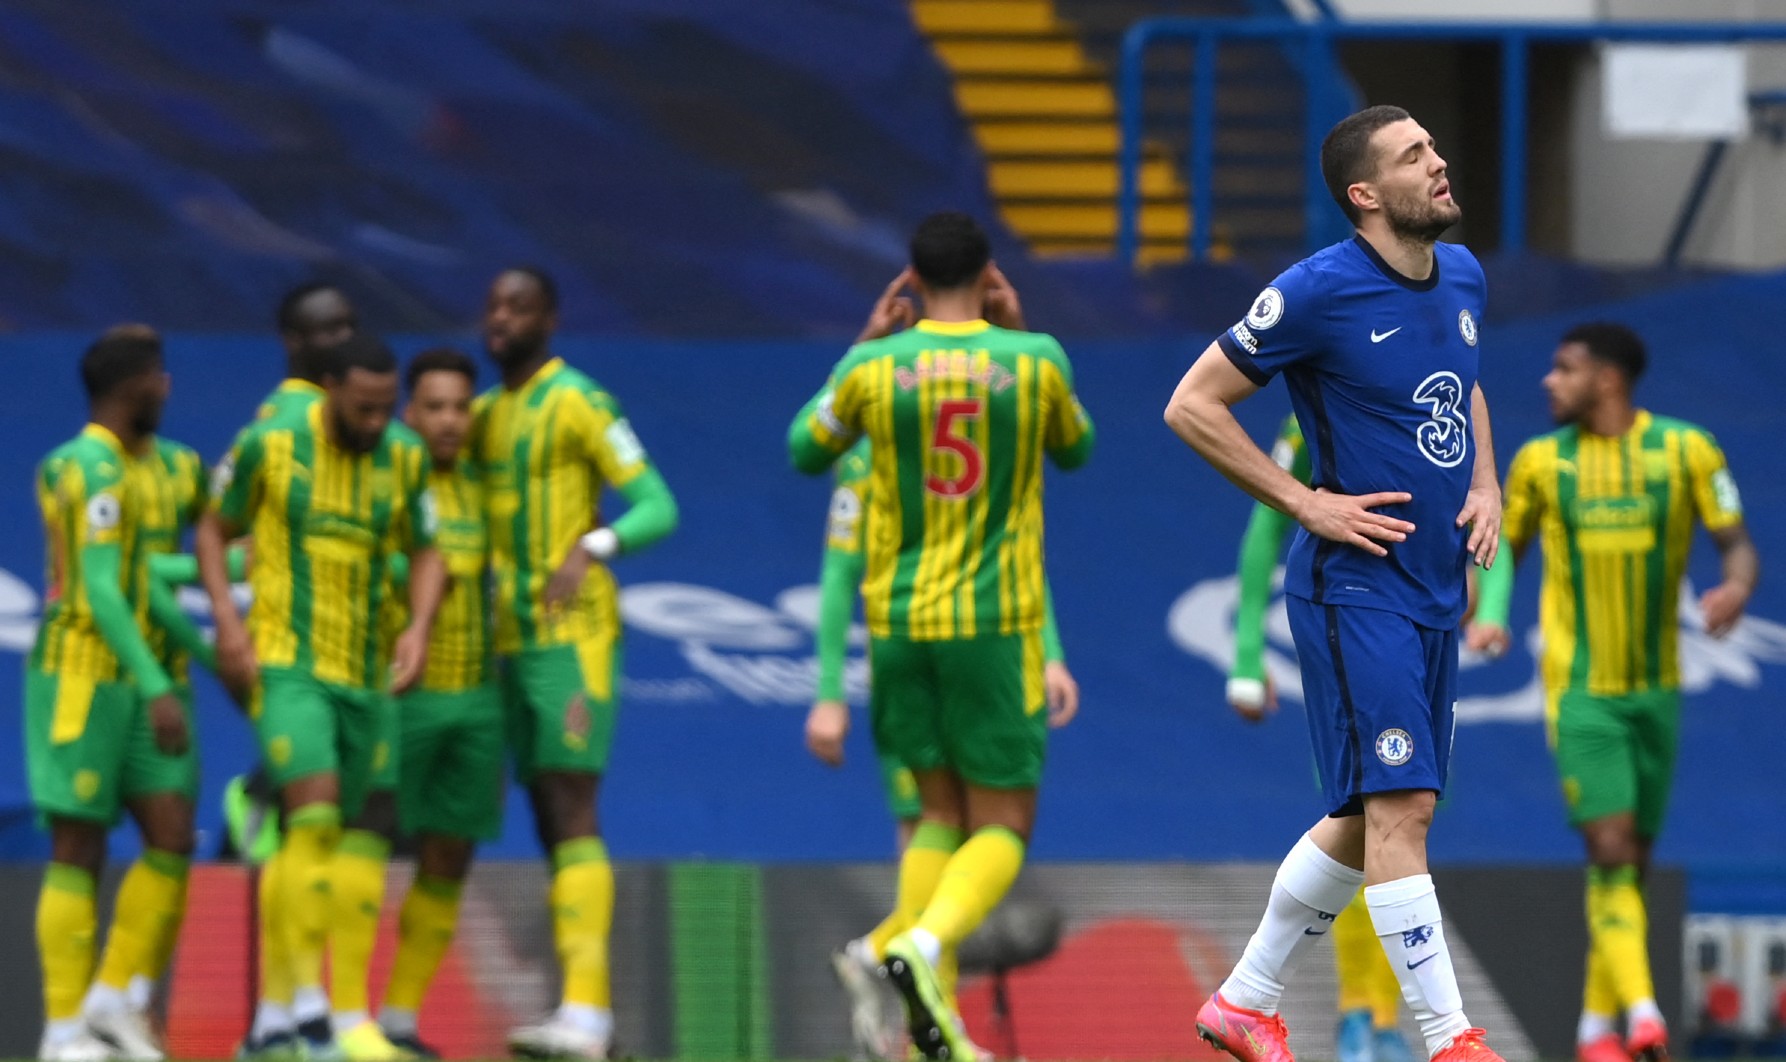 Chelsea-West Bromwich Albion (2-5) : Les Blues humiliés à domicile